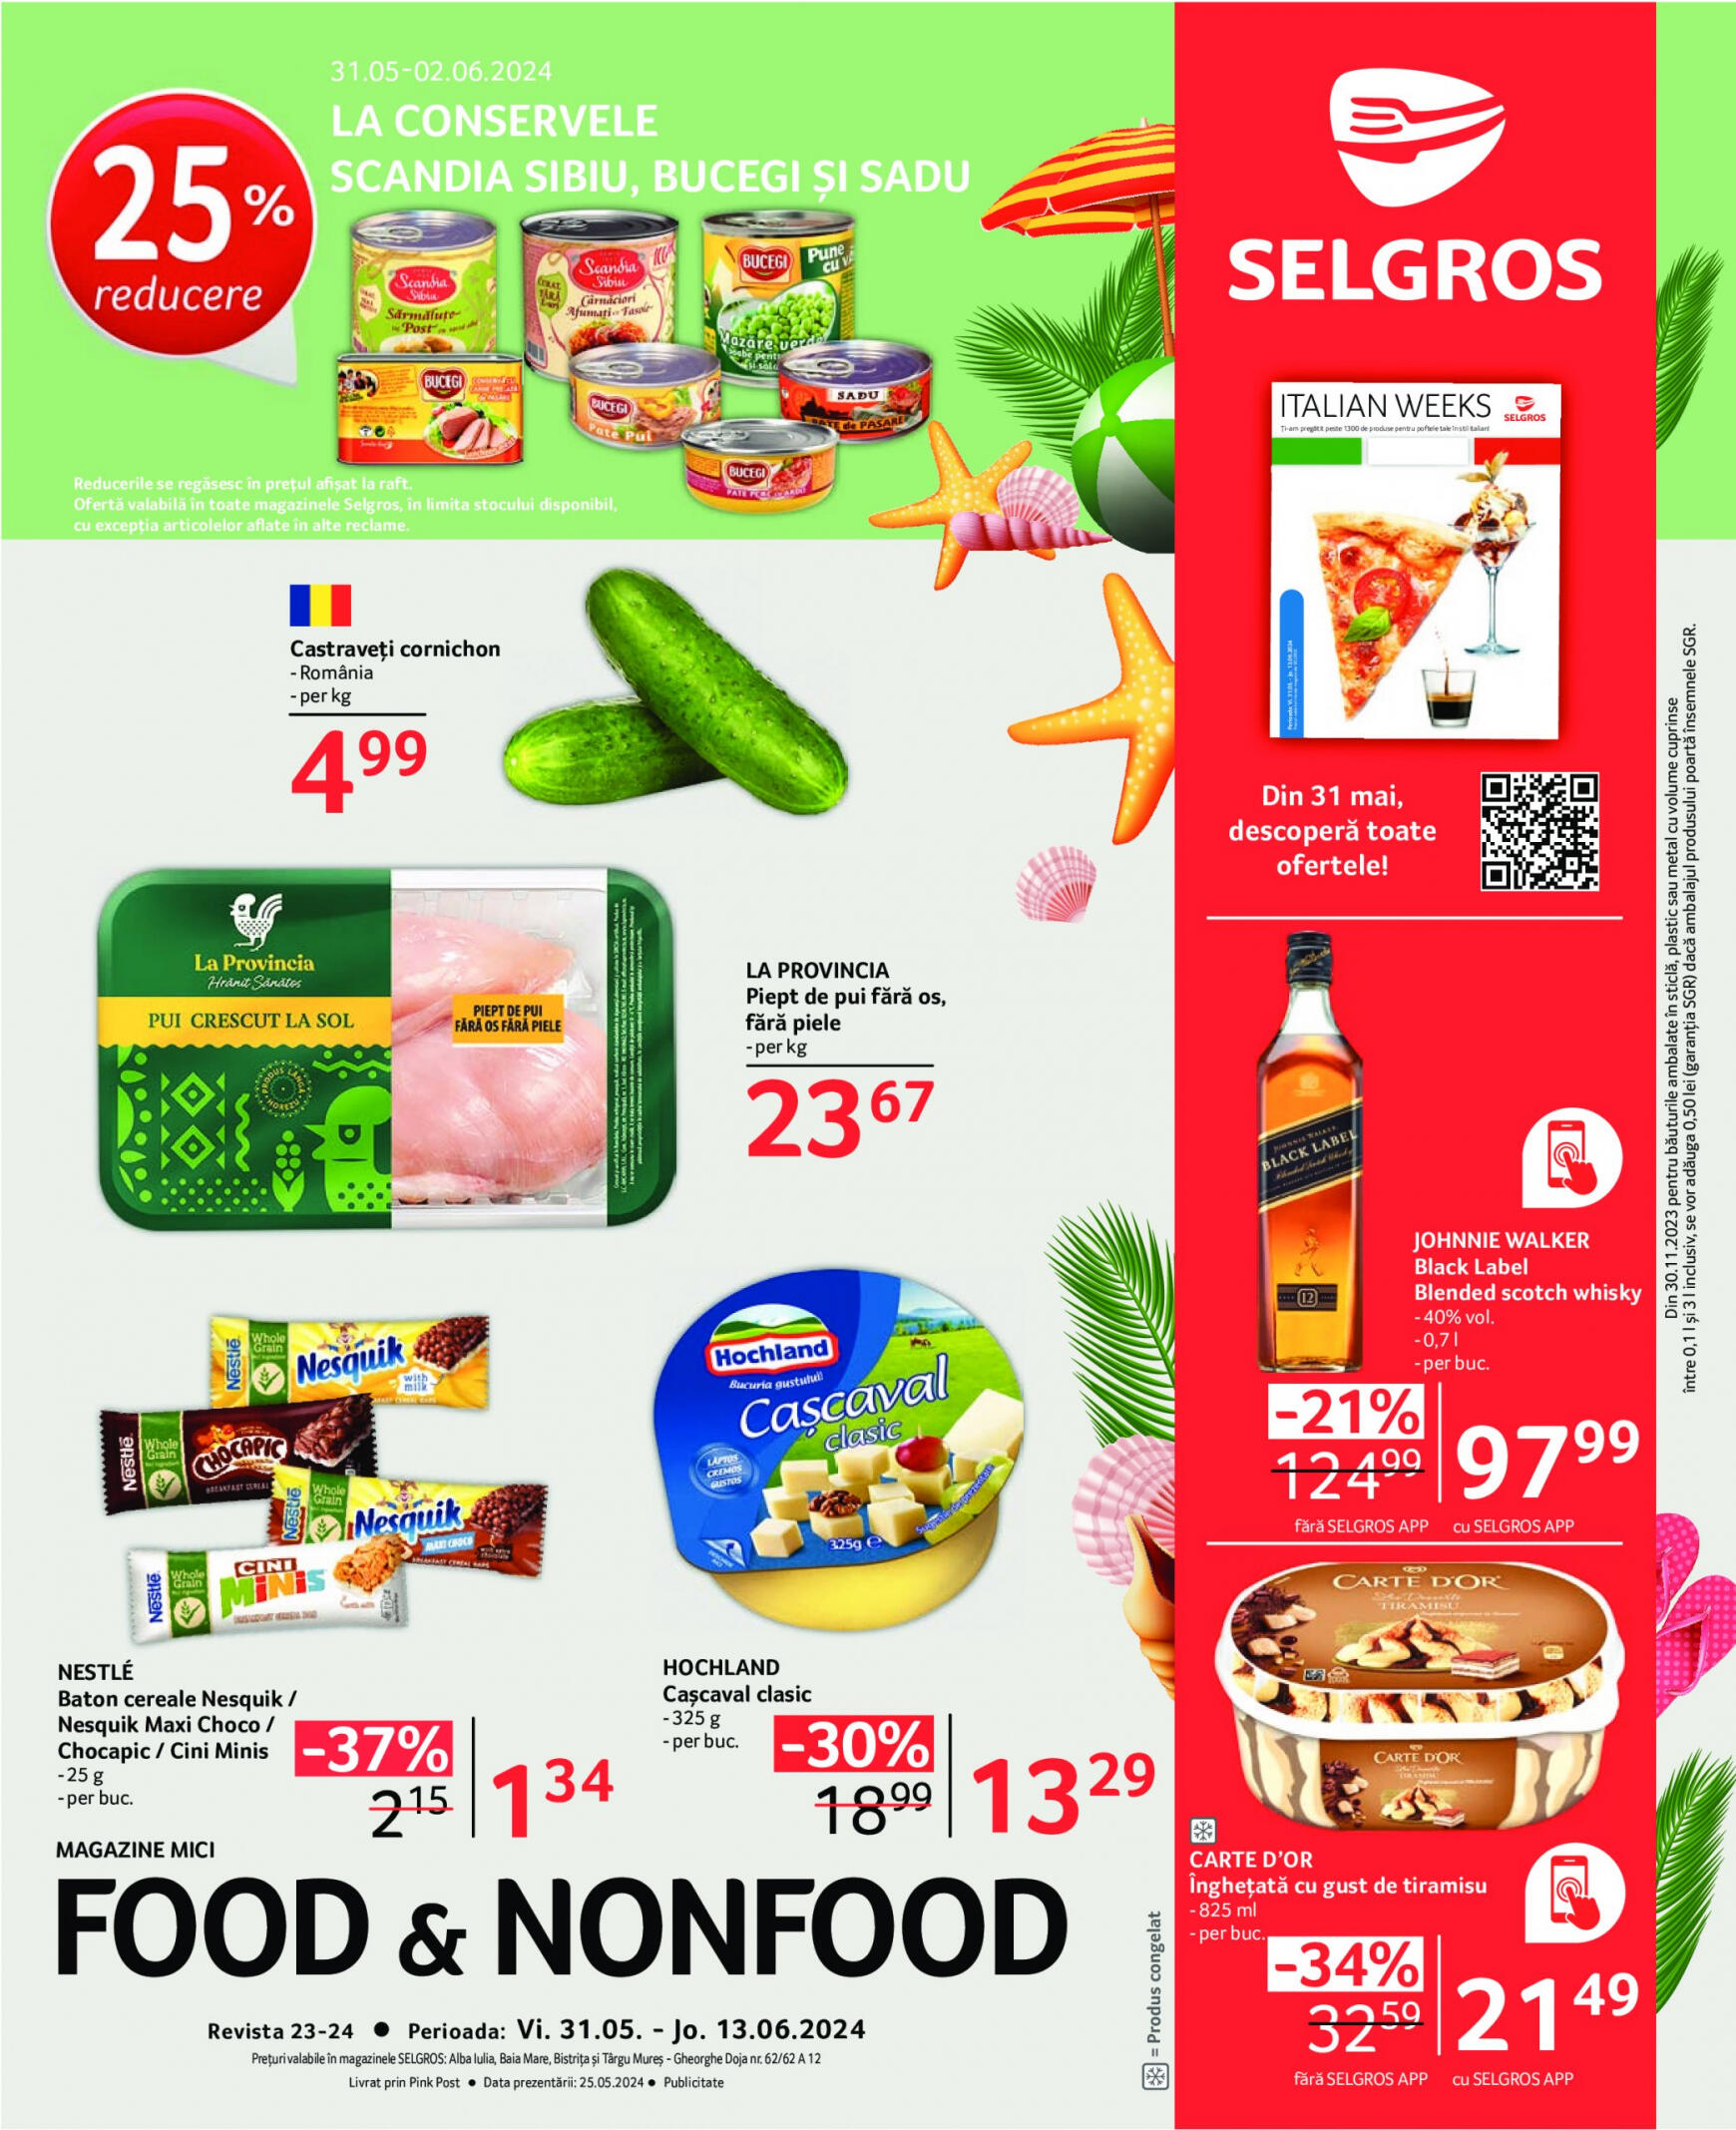 selgros - Catalog nou Selgros - Food & Nonfood 31.05. - 13.06.